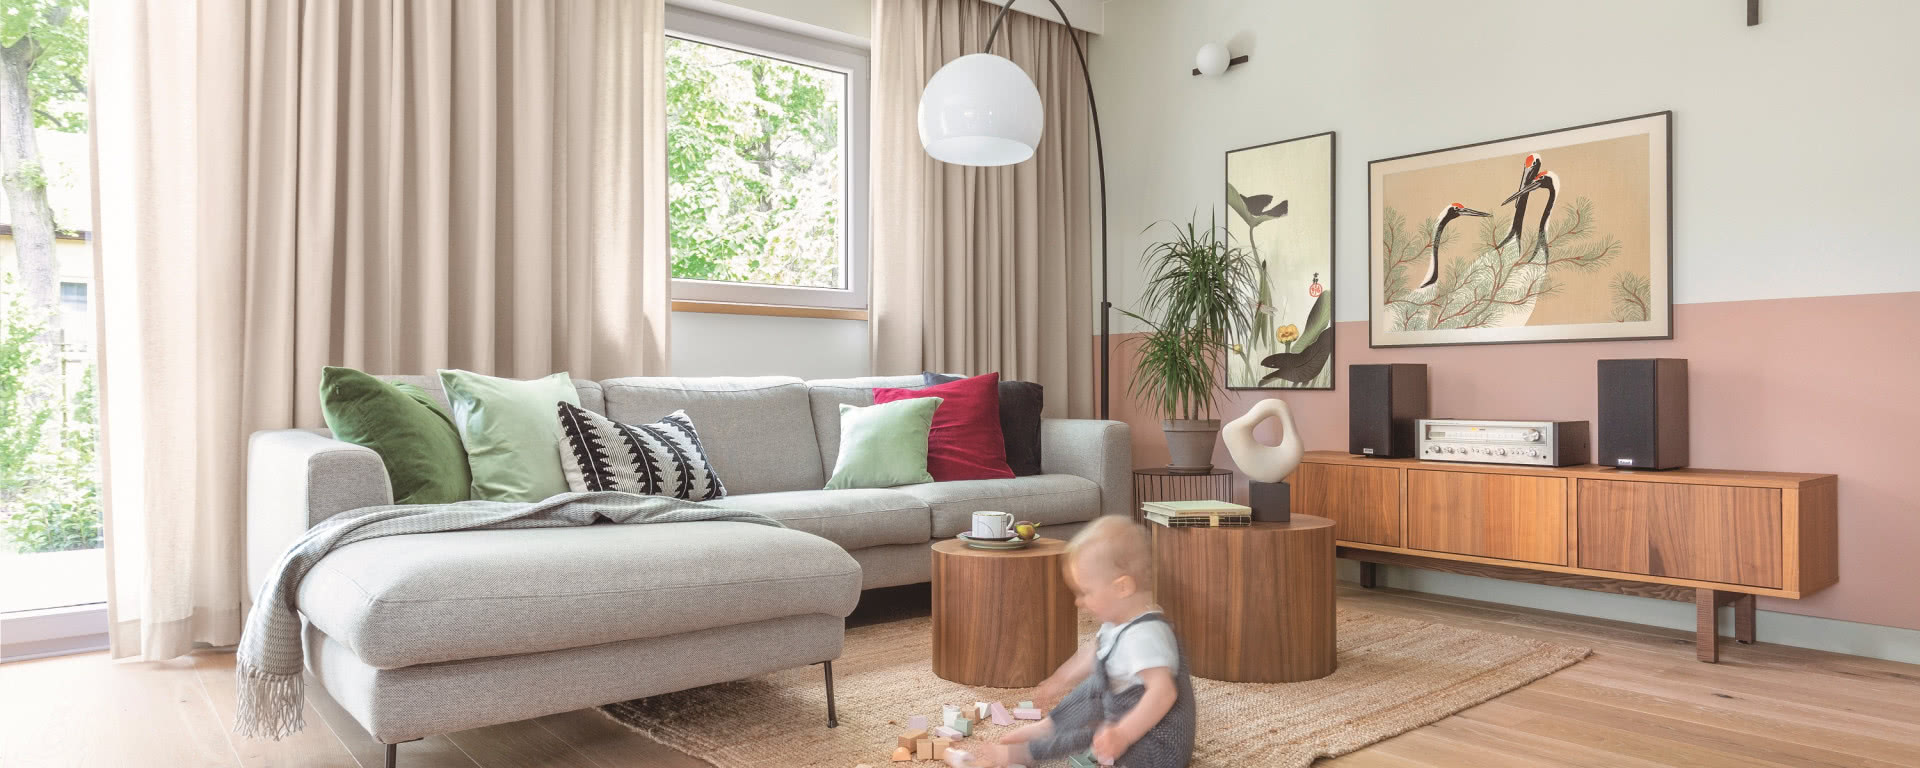 Dom w Milanówku w stylu pigmented minimal - zamieszkała w nim rodzina z dzieckiem